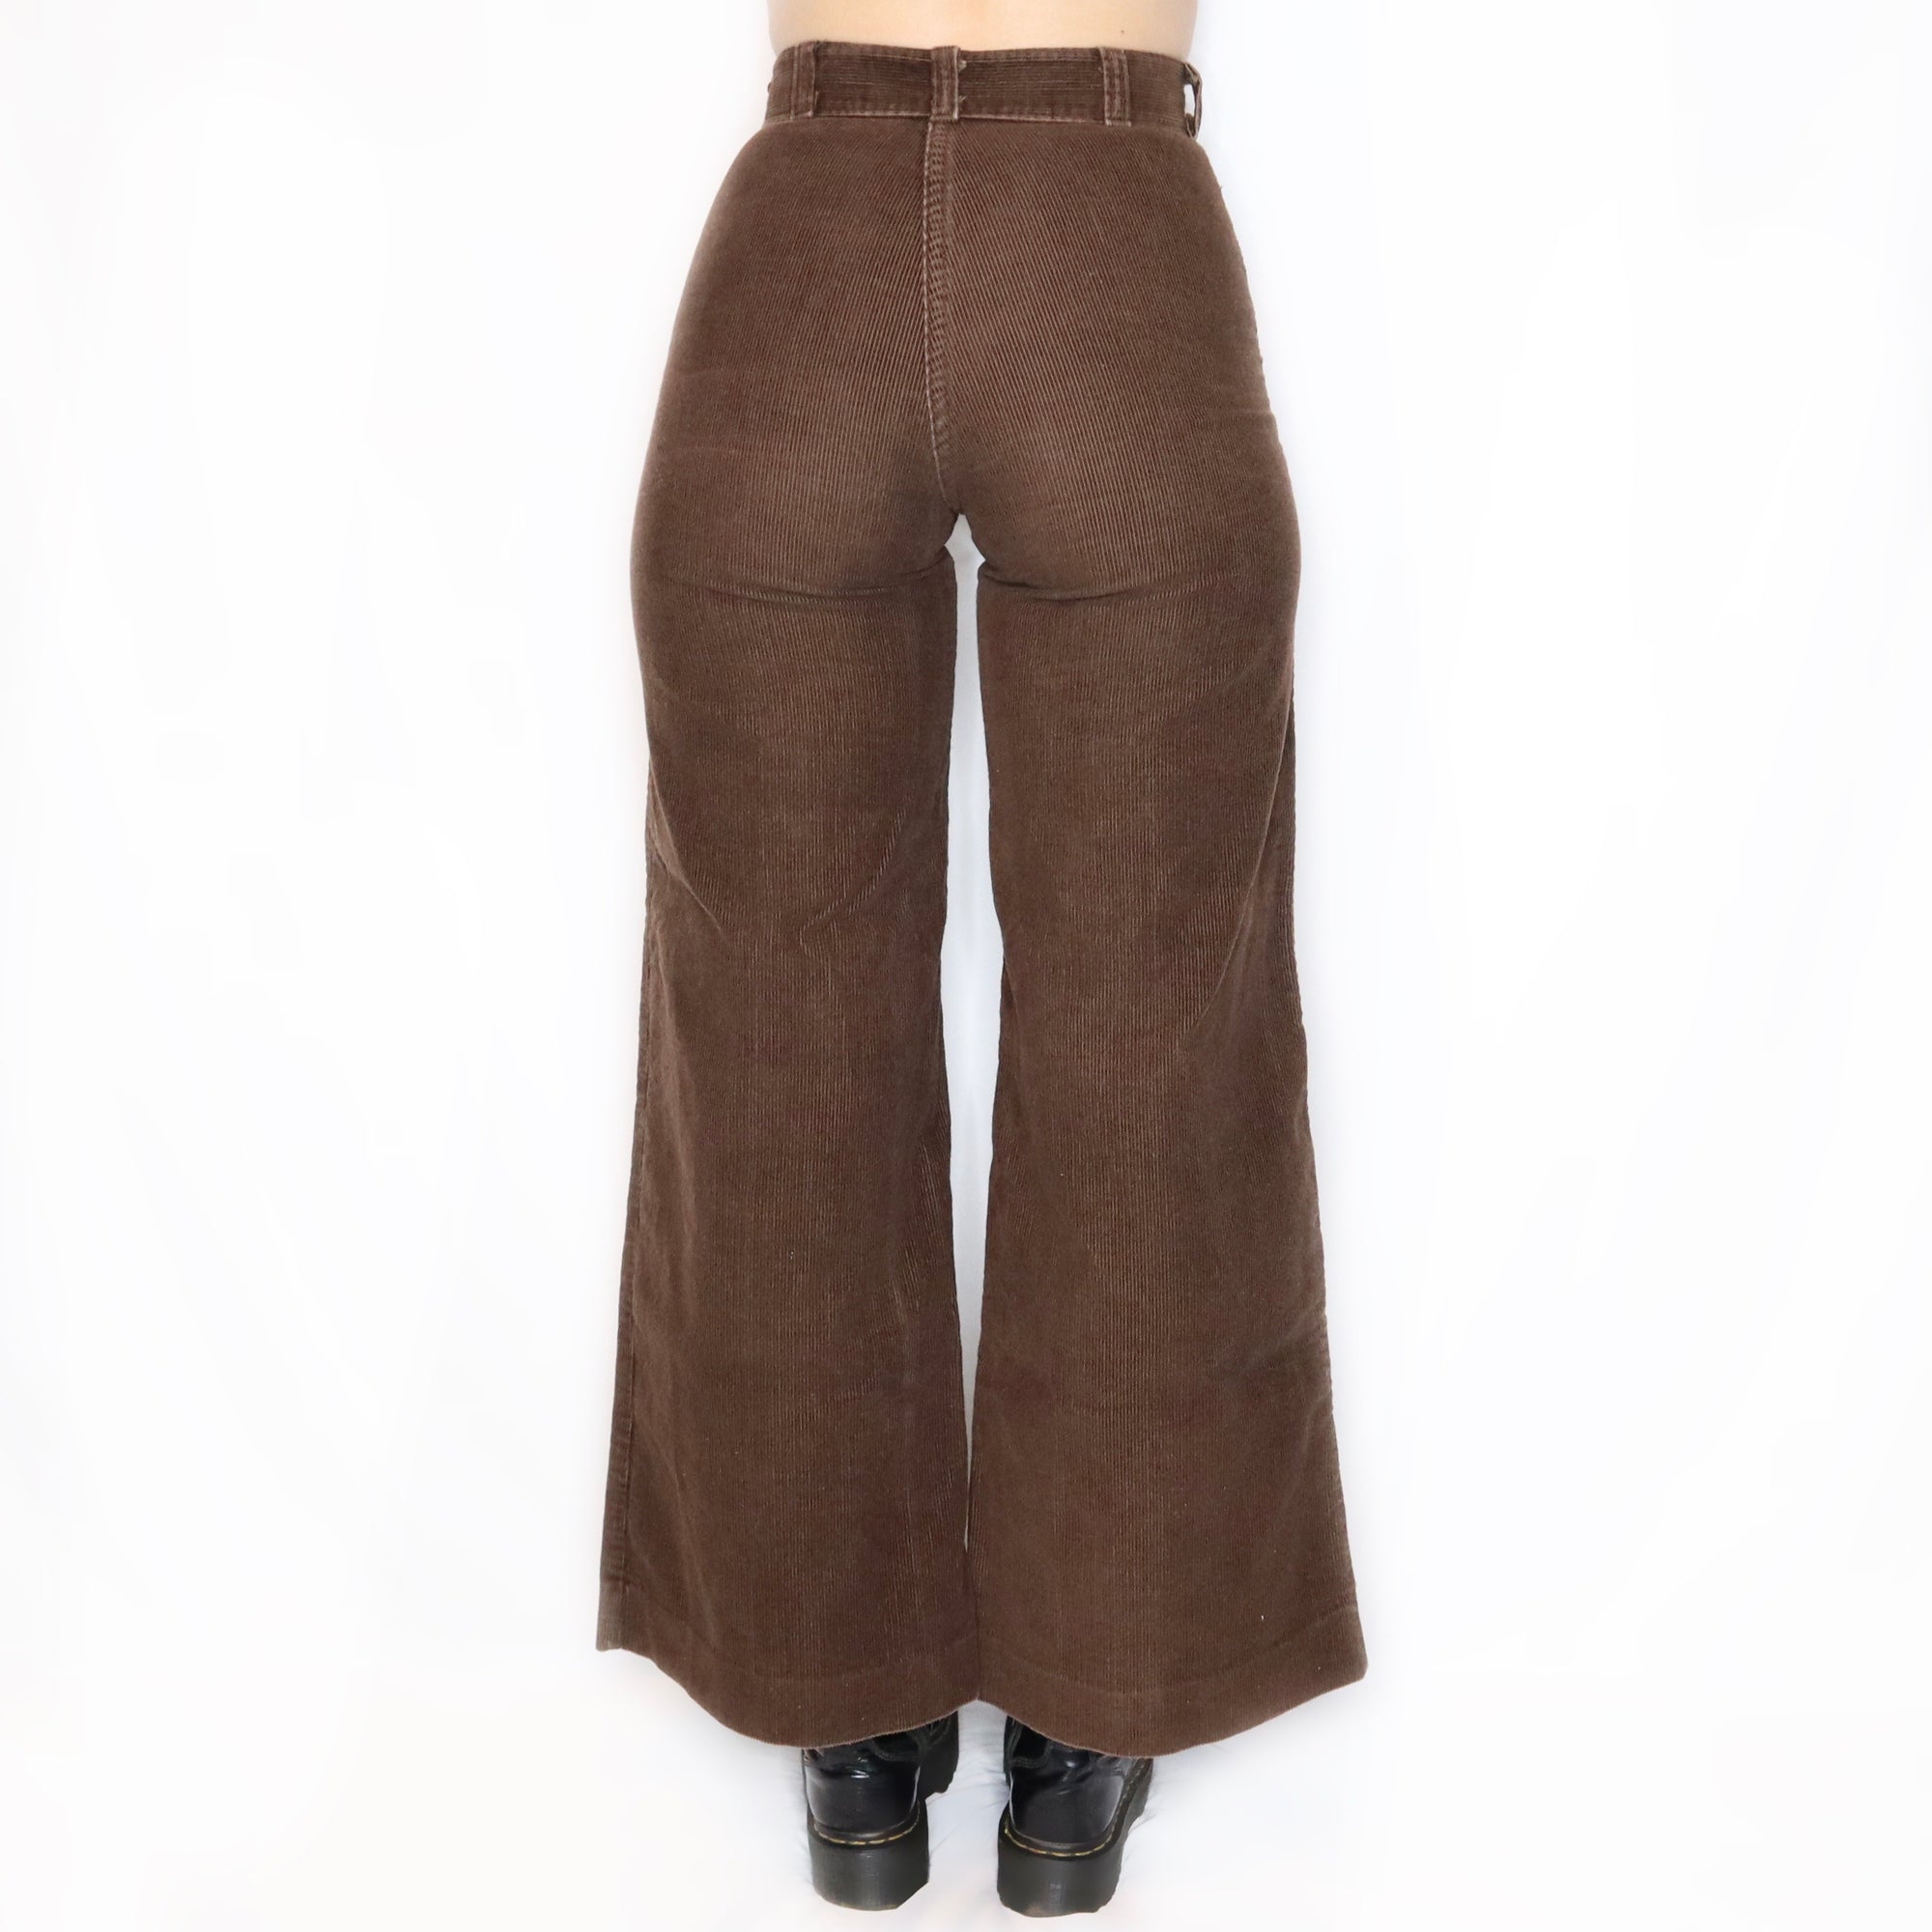 Rare Vintage 70s Brown Corduroy High Waisted Bell Bottom Pants